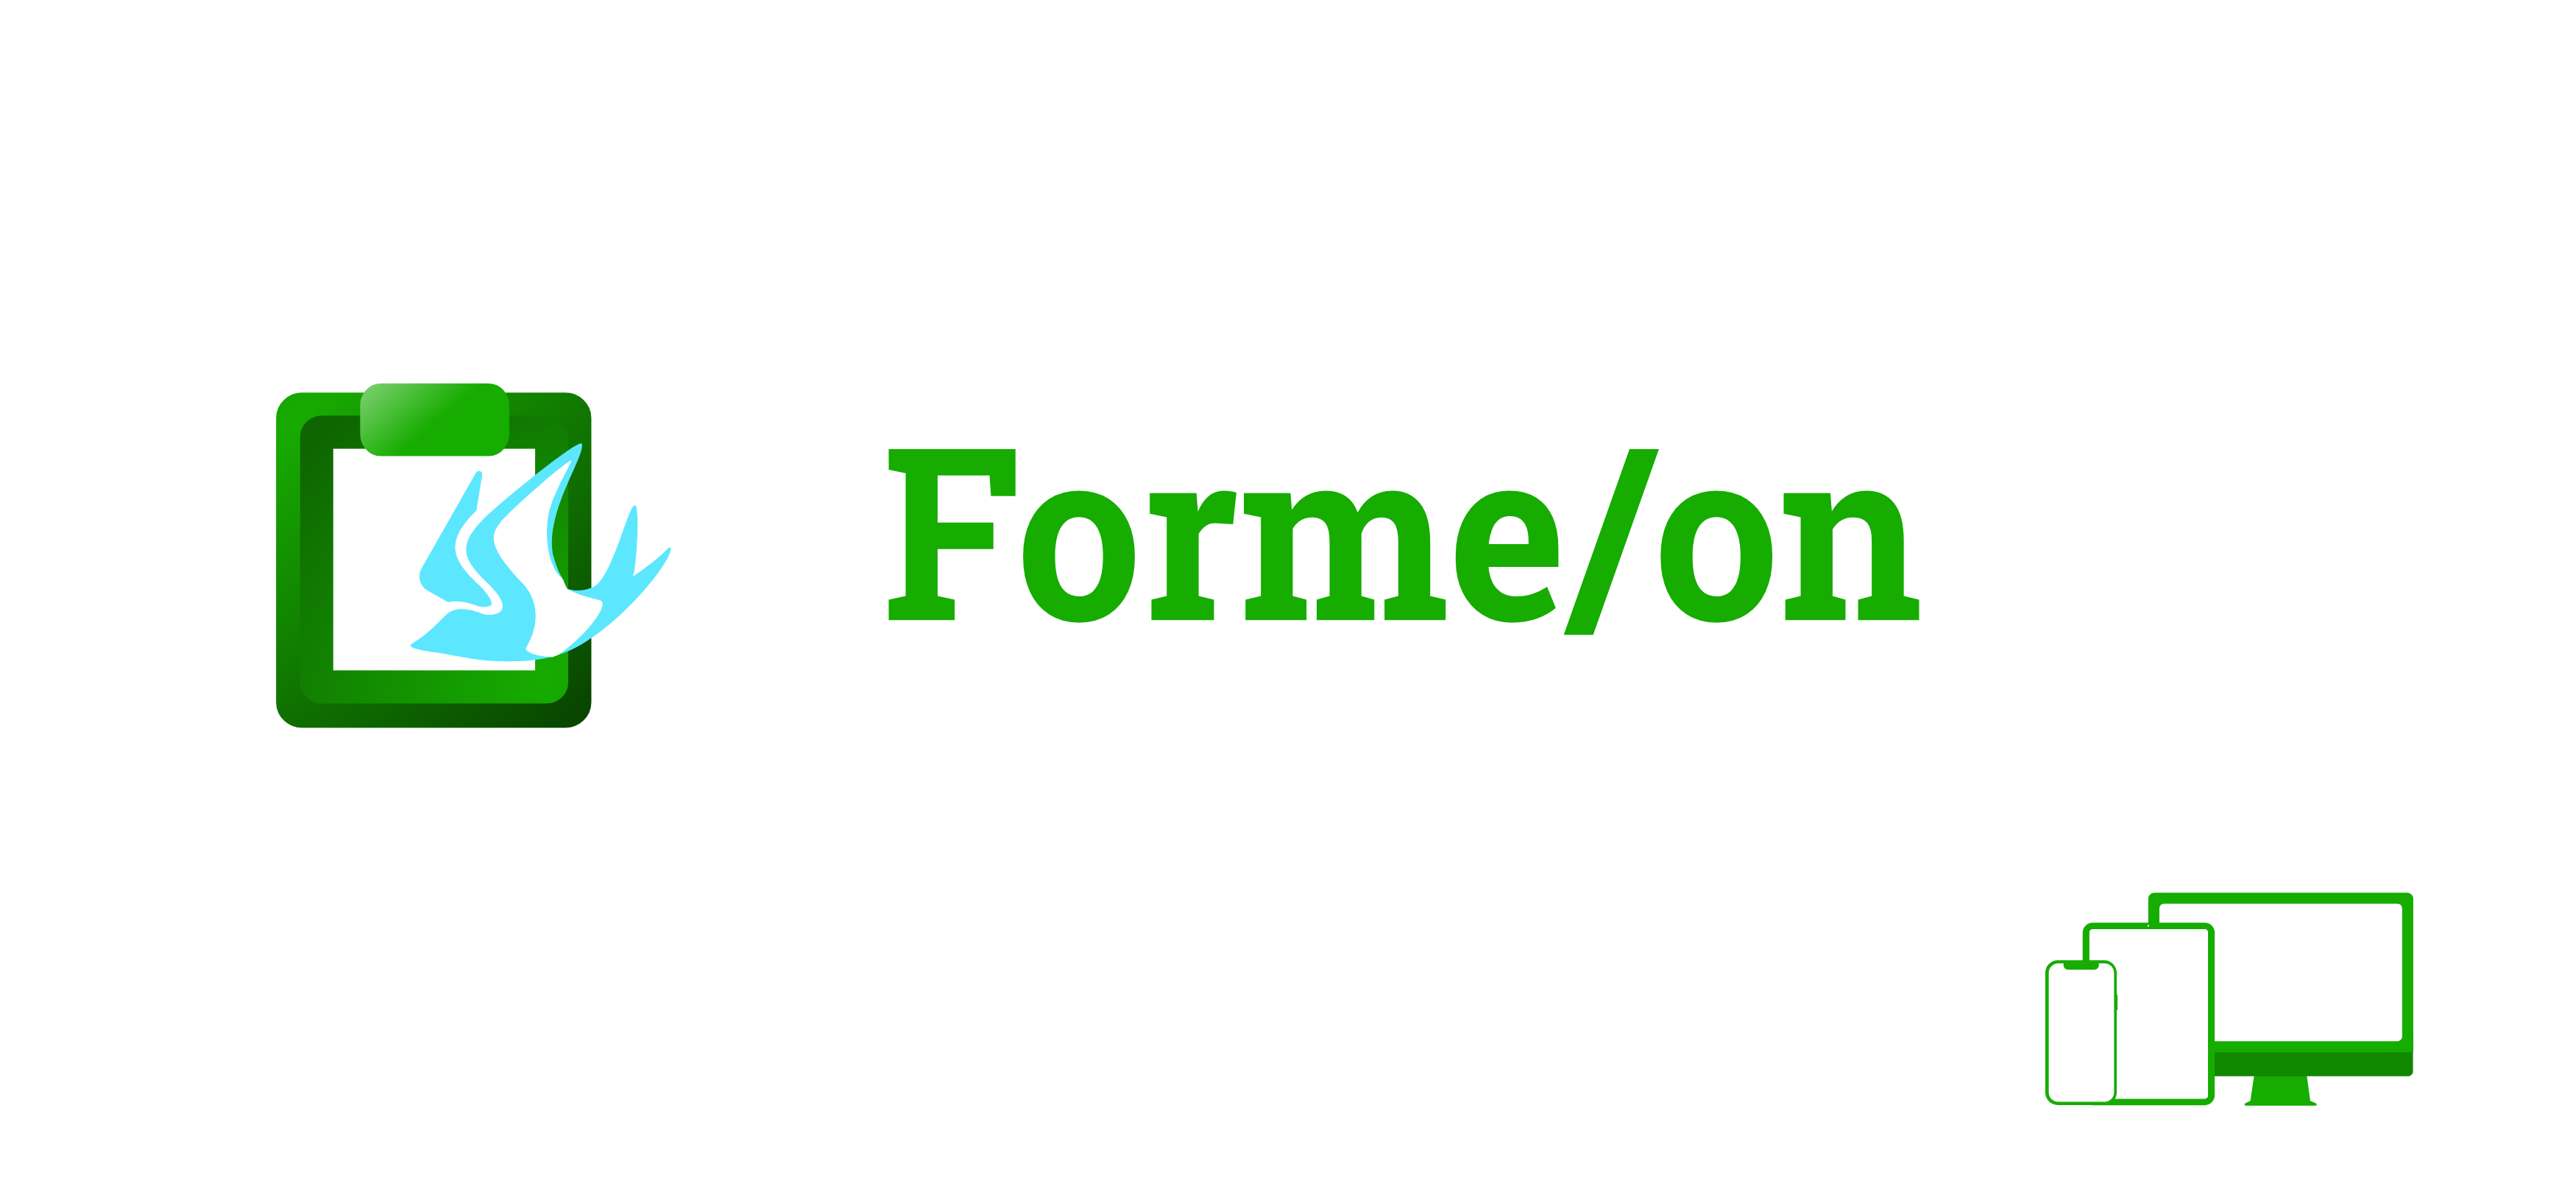 Forme/on (フォーミーオン)